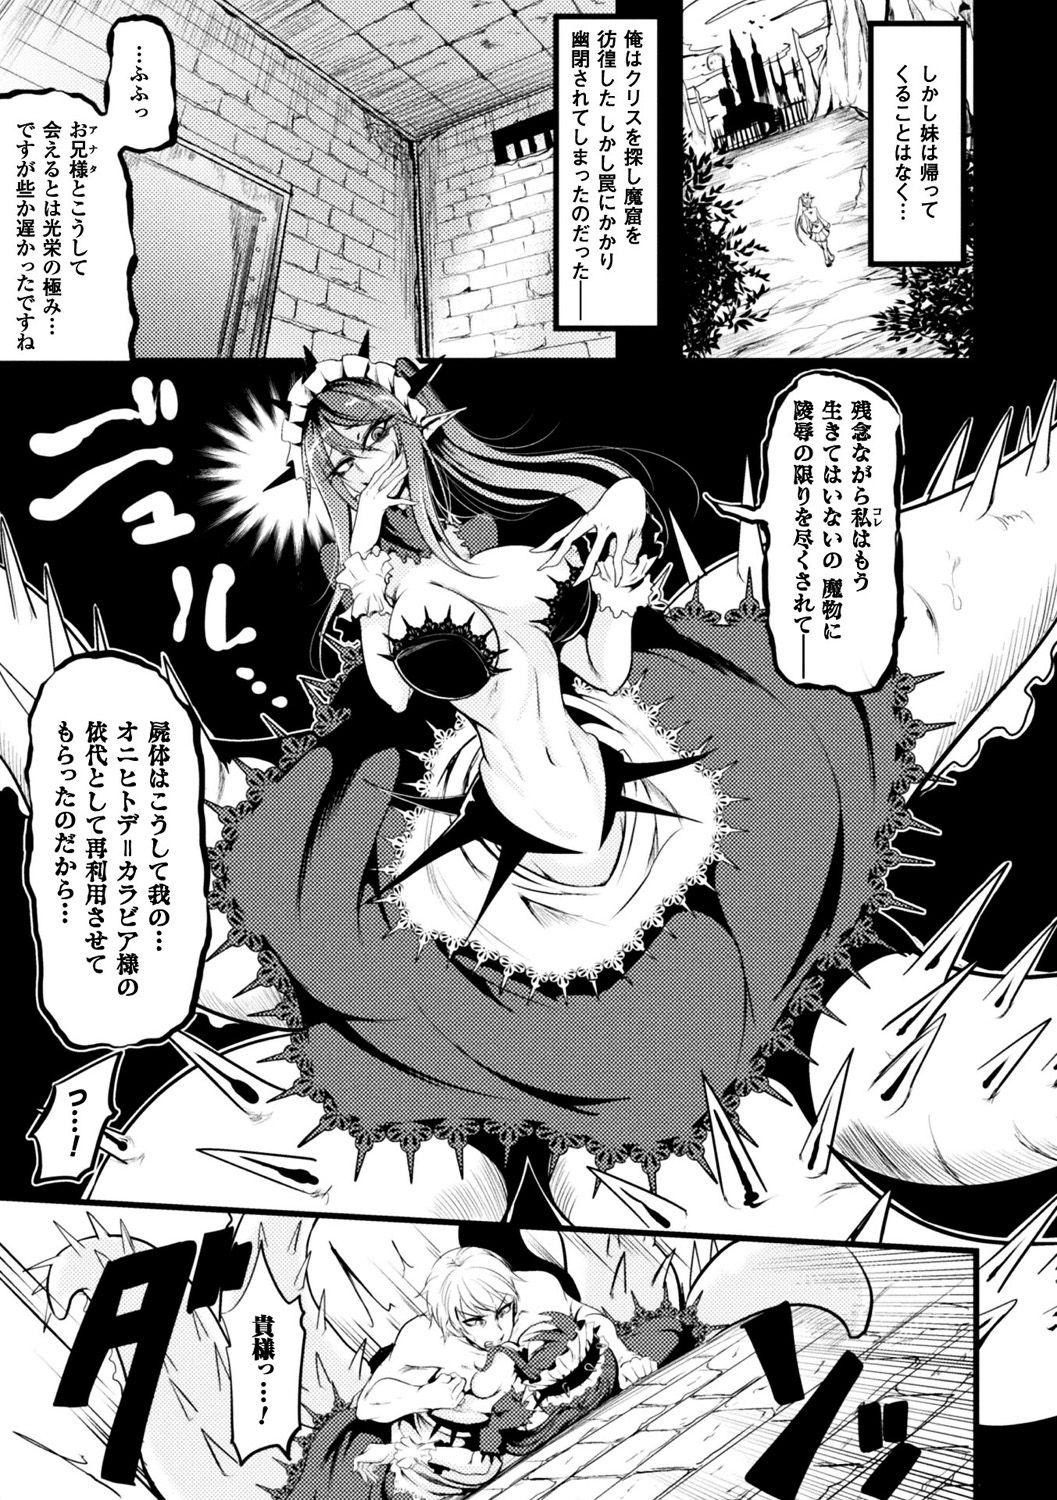 Bessatsu Comic Unreal Monster Musume Paradise Digital Ban Vol. 9 24